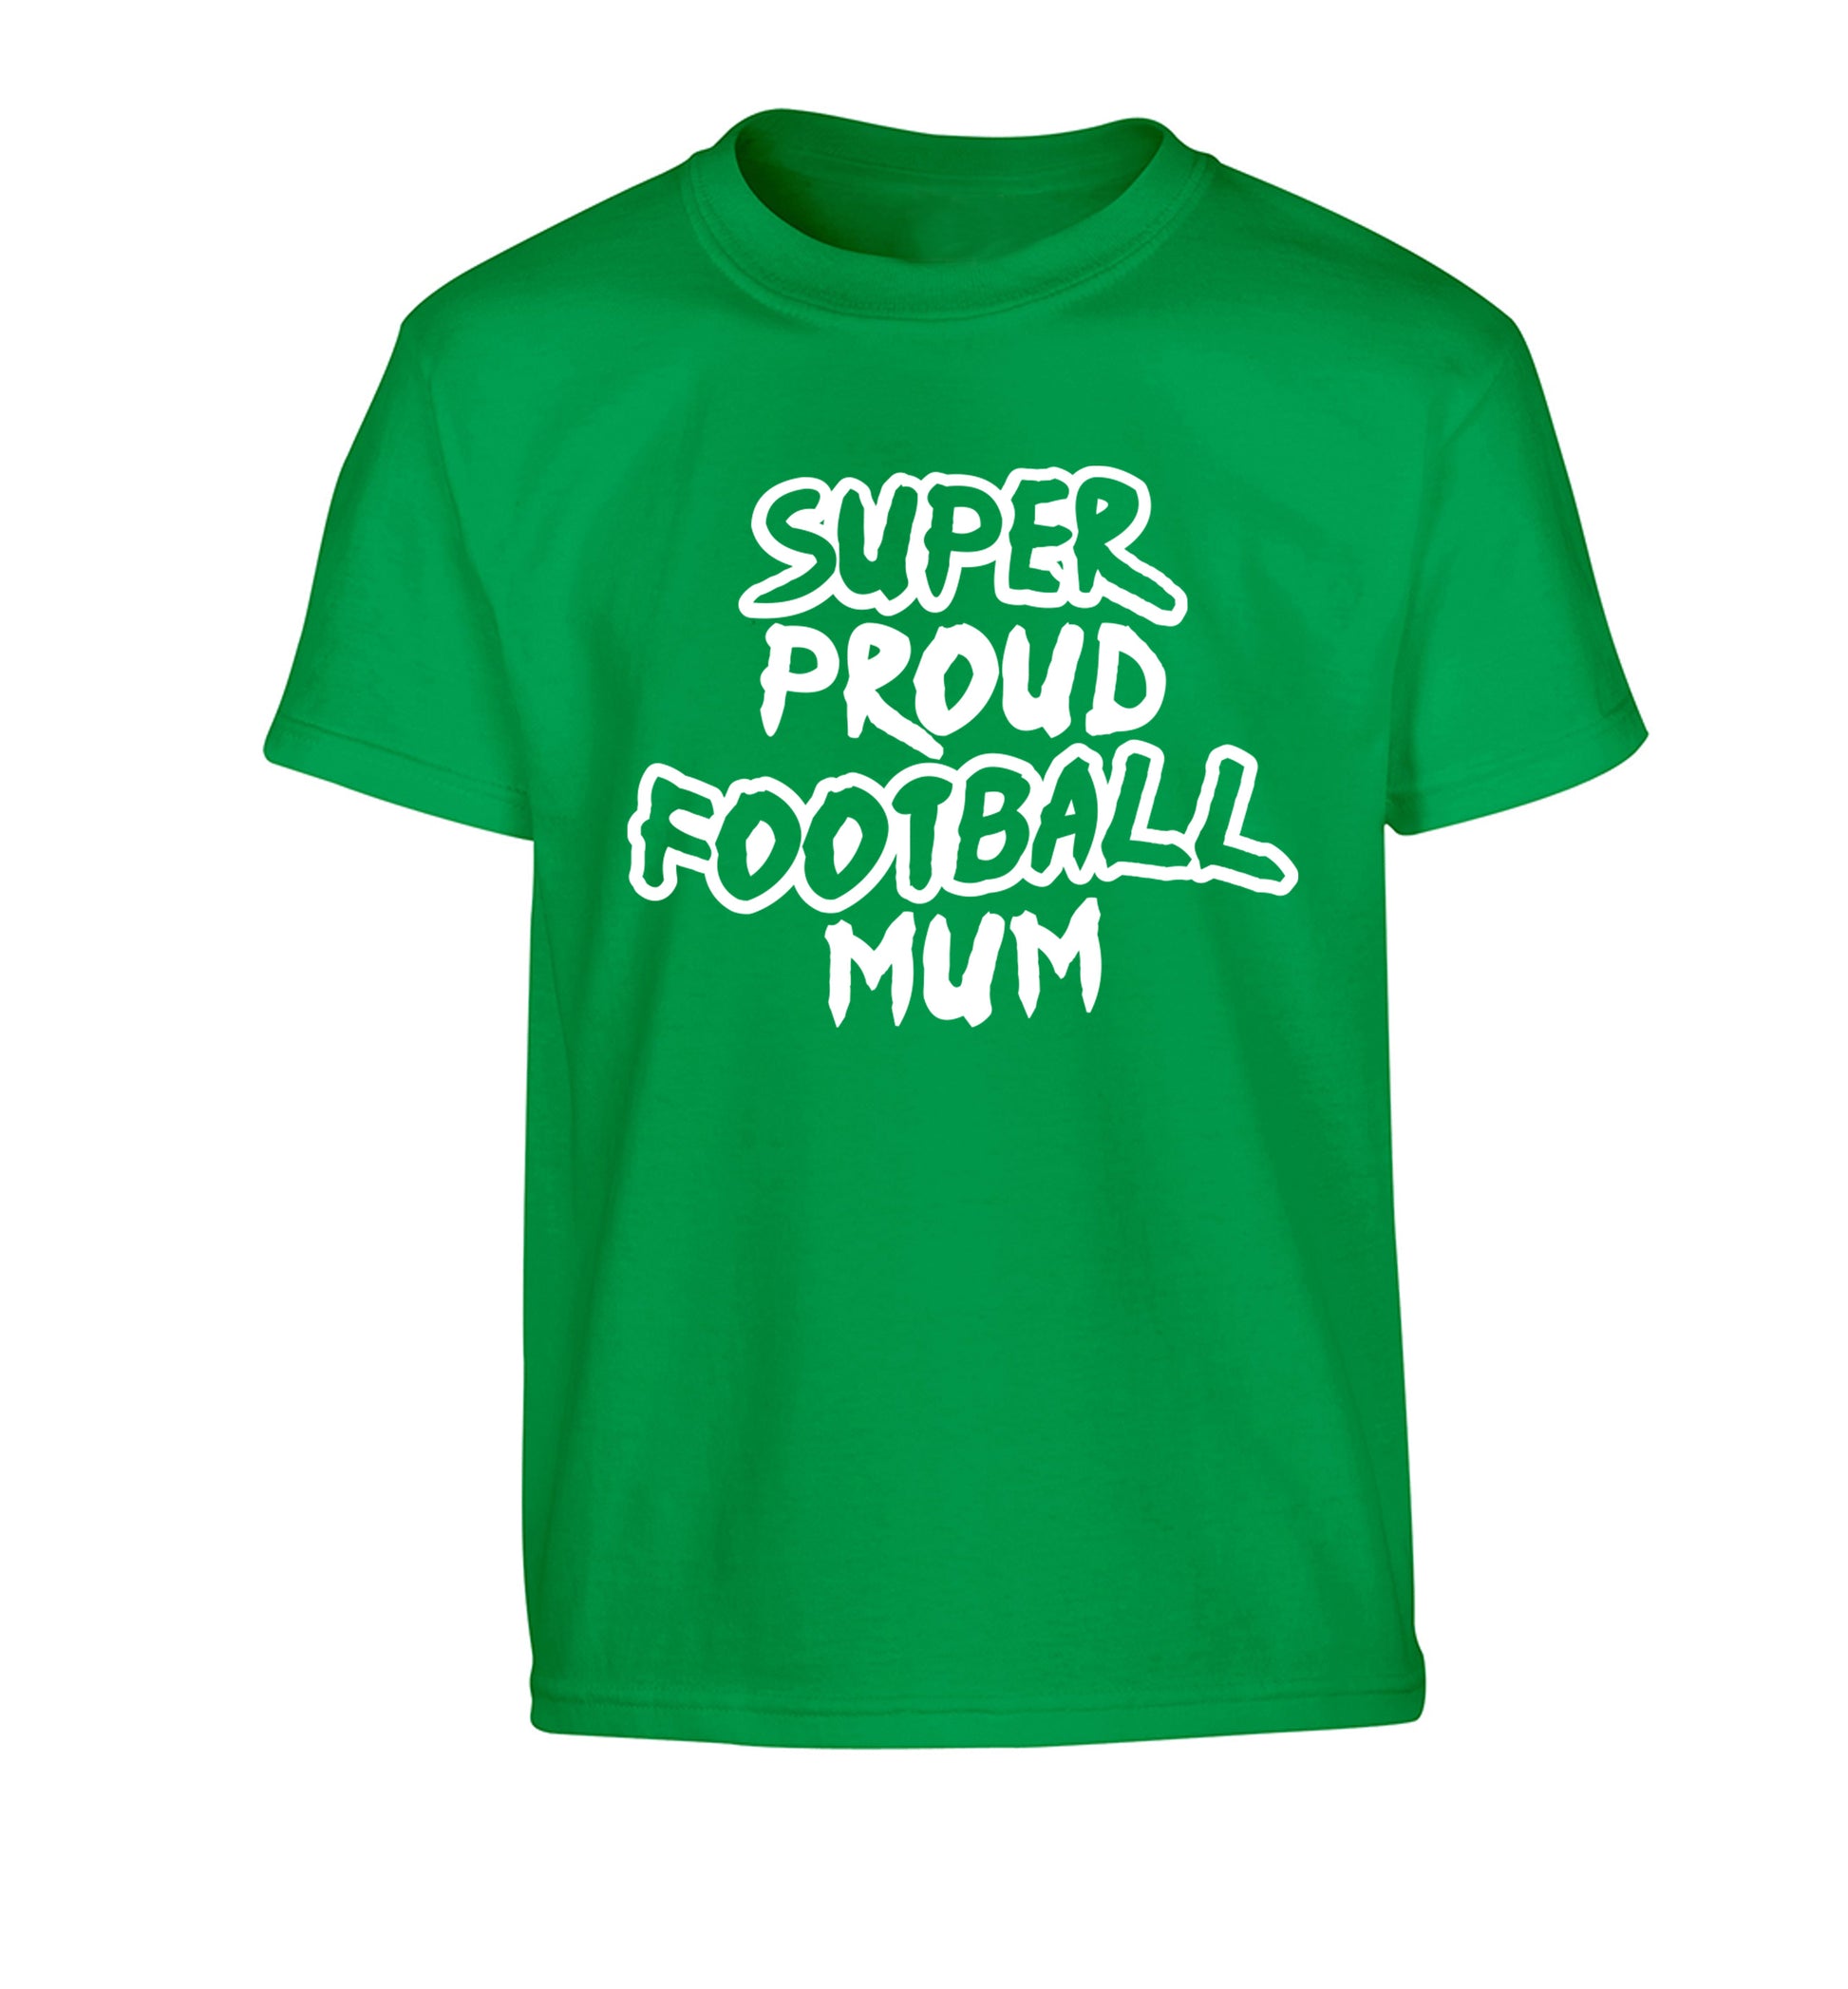 Super proud football mum Children's green Tshirt 12-14 Years